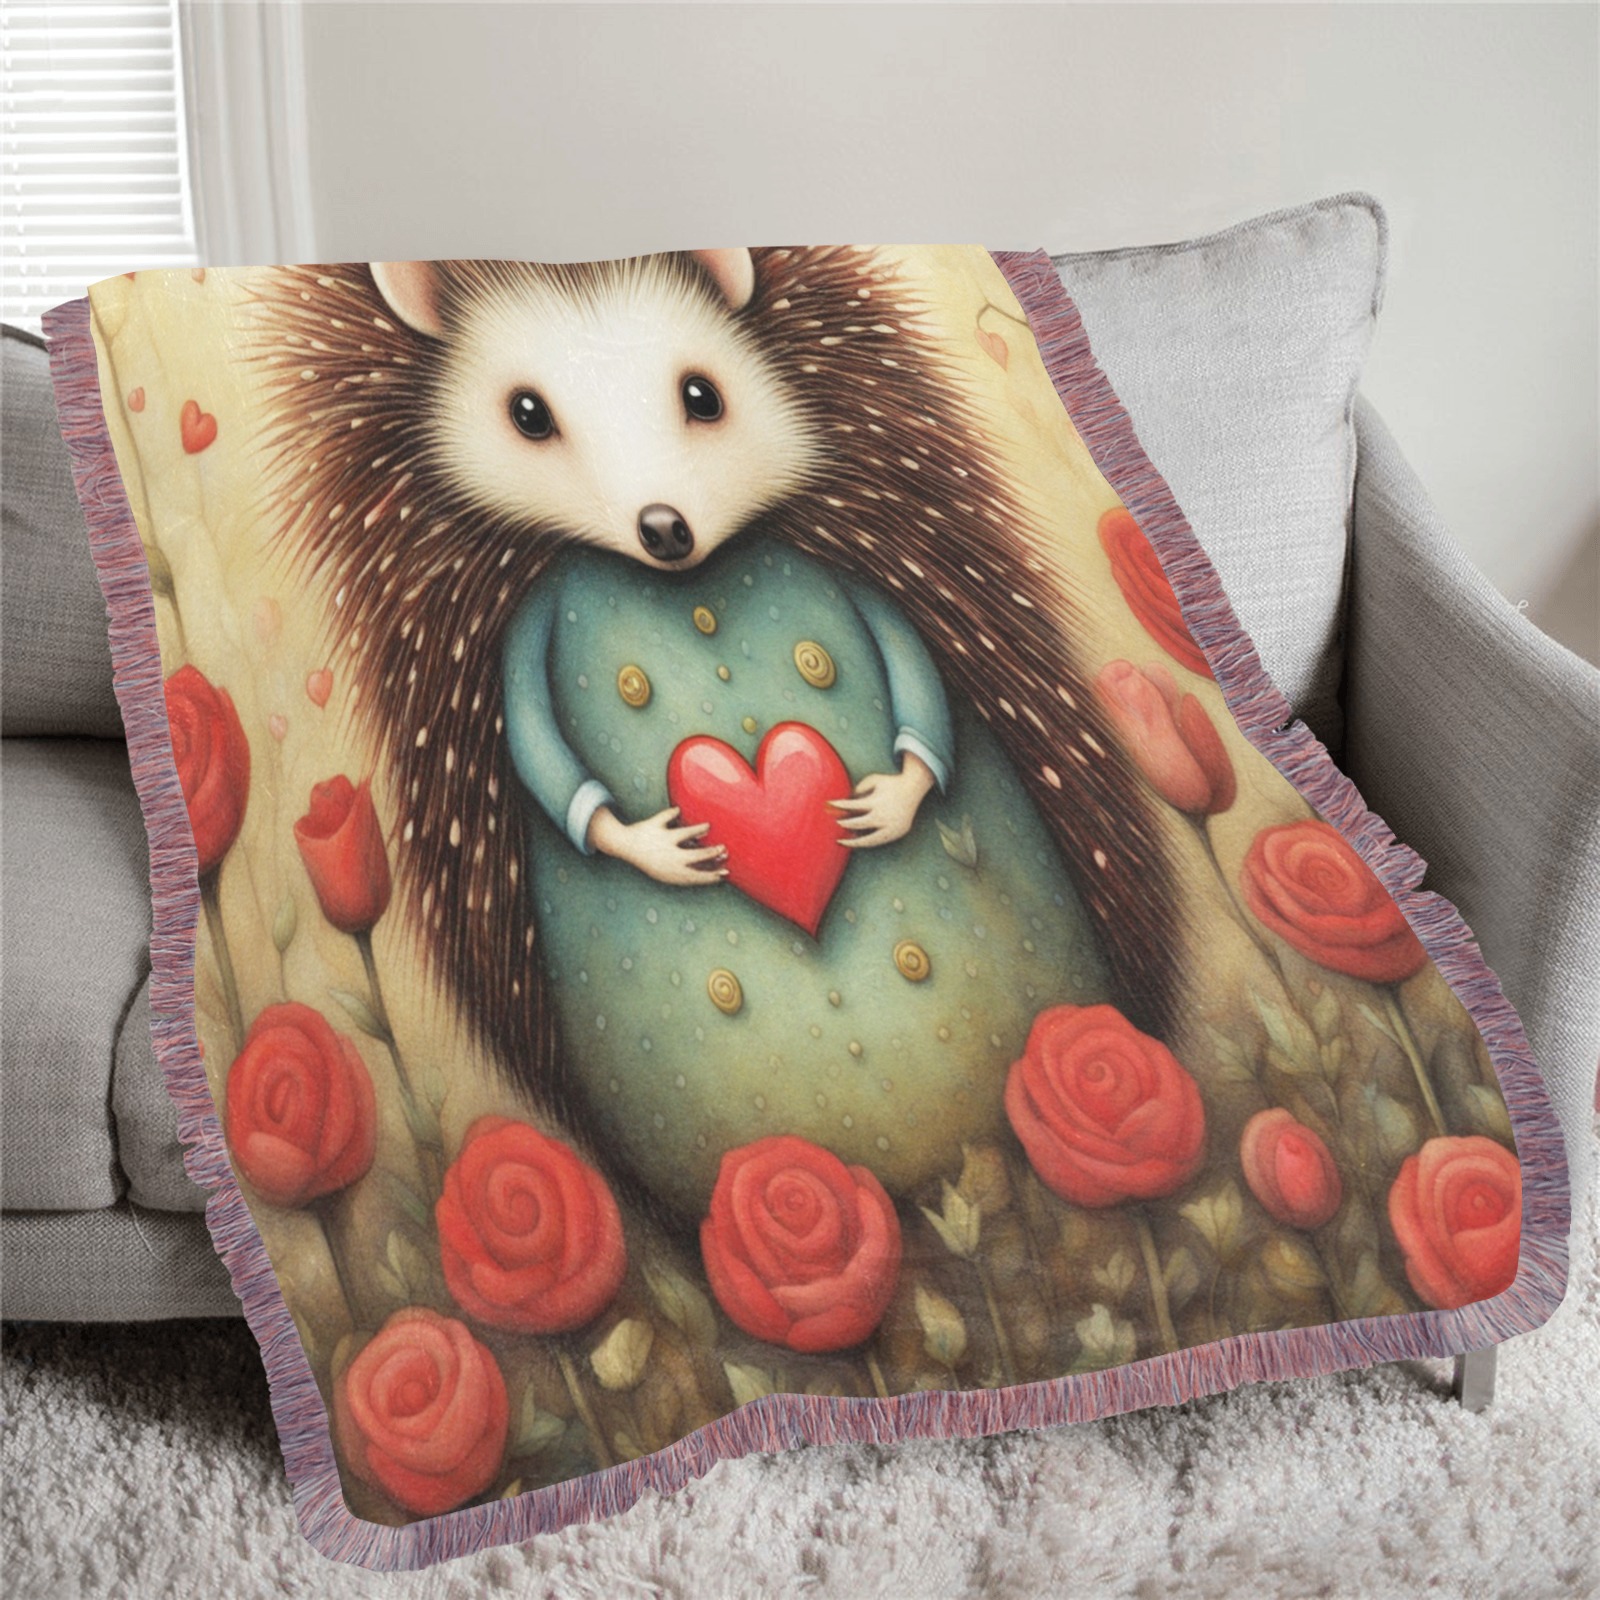 Hedgehog Love 2 Ultra-Soft Fringe Blanket 50"x60" (Mixed Pink)